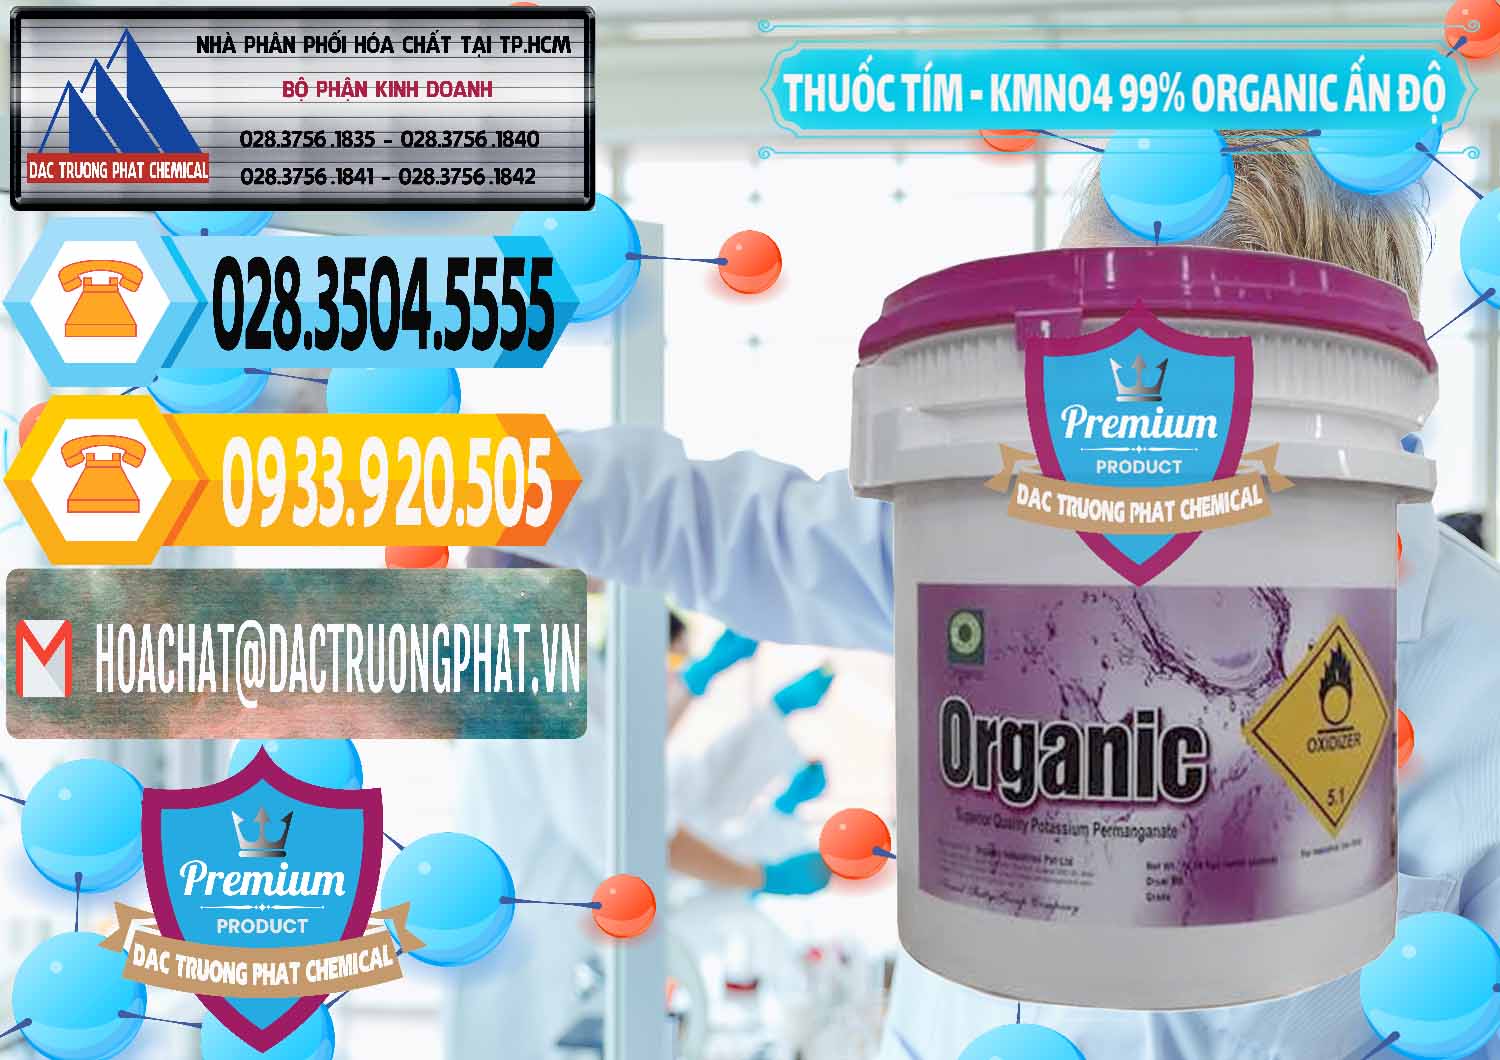 Đơn vị chuyên cung cấp và bán Thuốc Tím - KMNO4 99% Organic Ấn Độ India - 0216 - Nhà cung cấp và nhập khẩu hóa chất tại TP.HCM - hoachattayrua.net